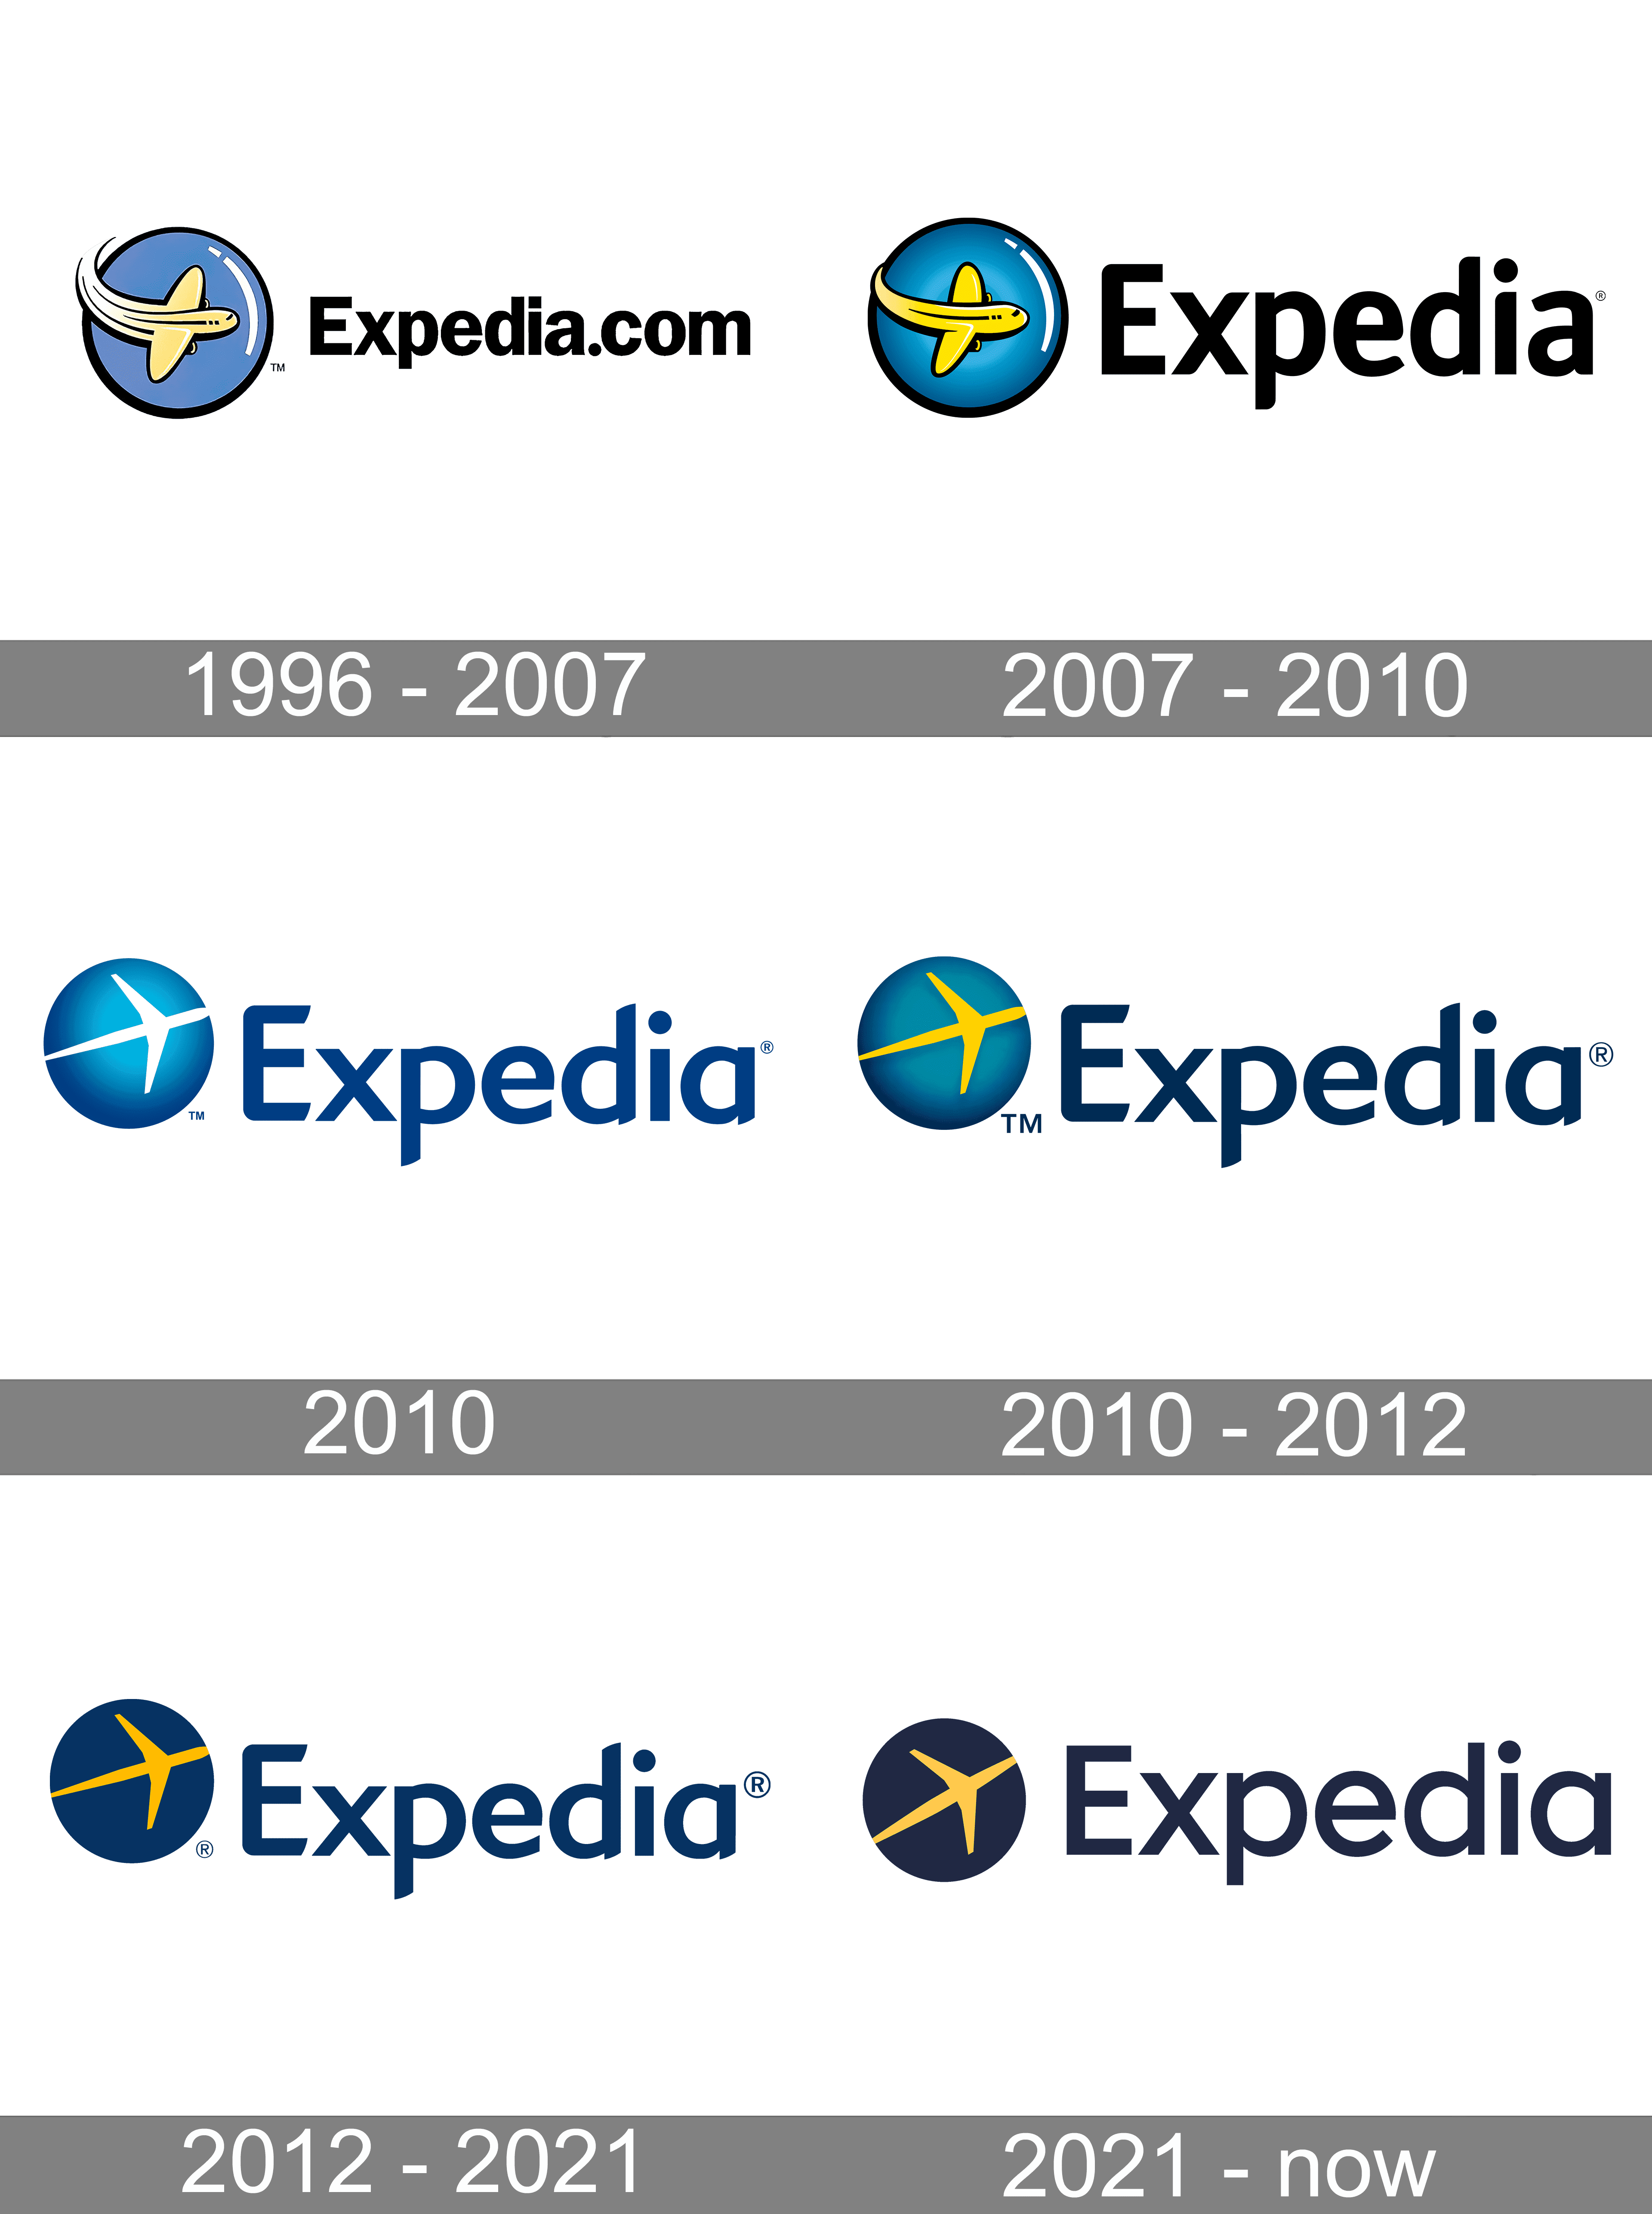 expedia travel company